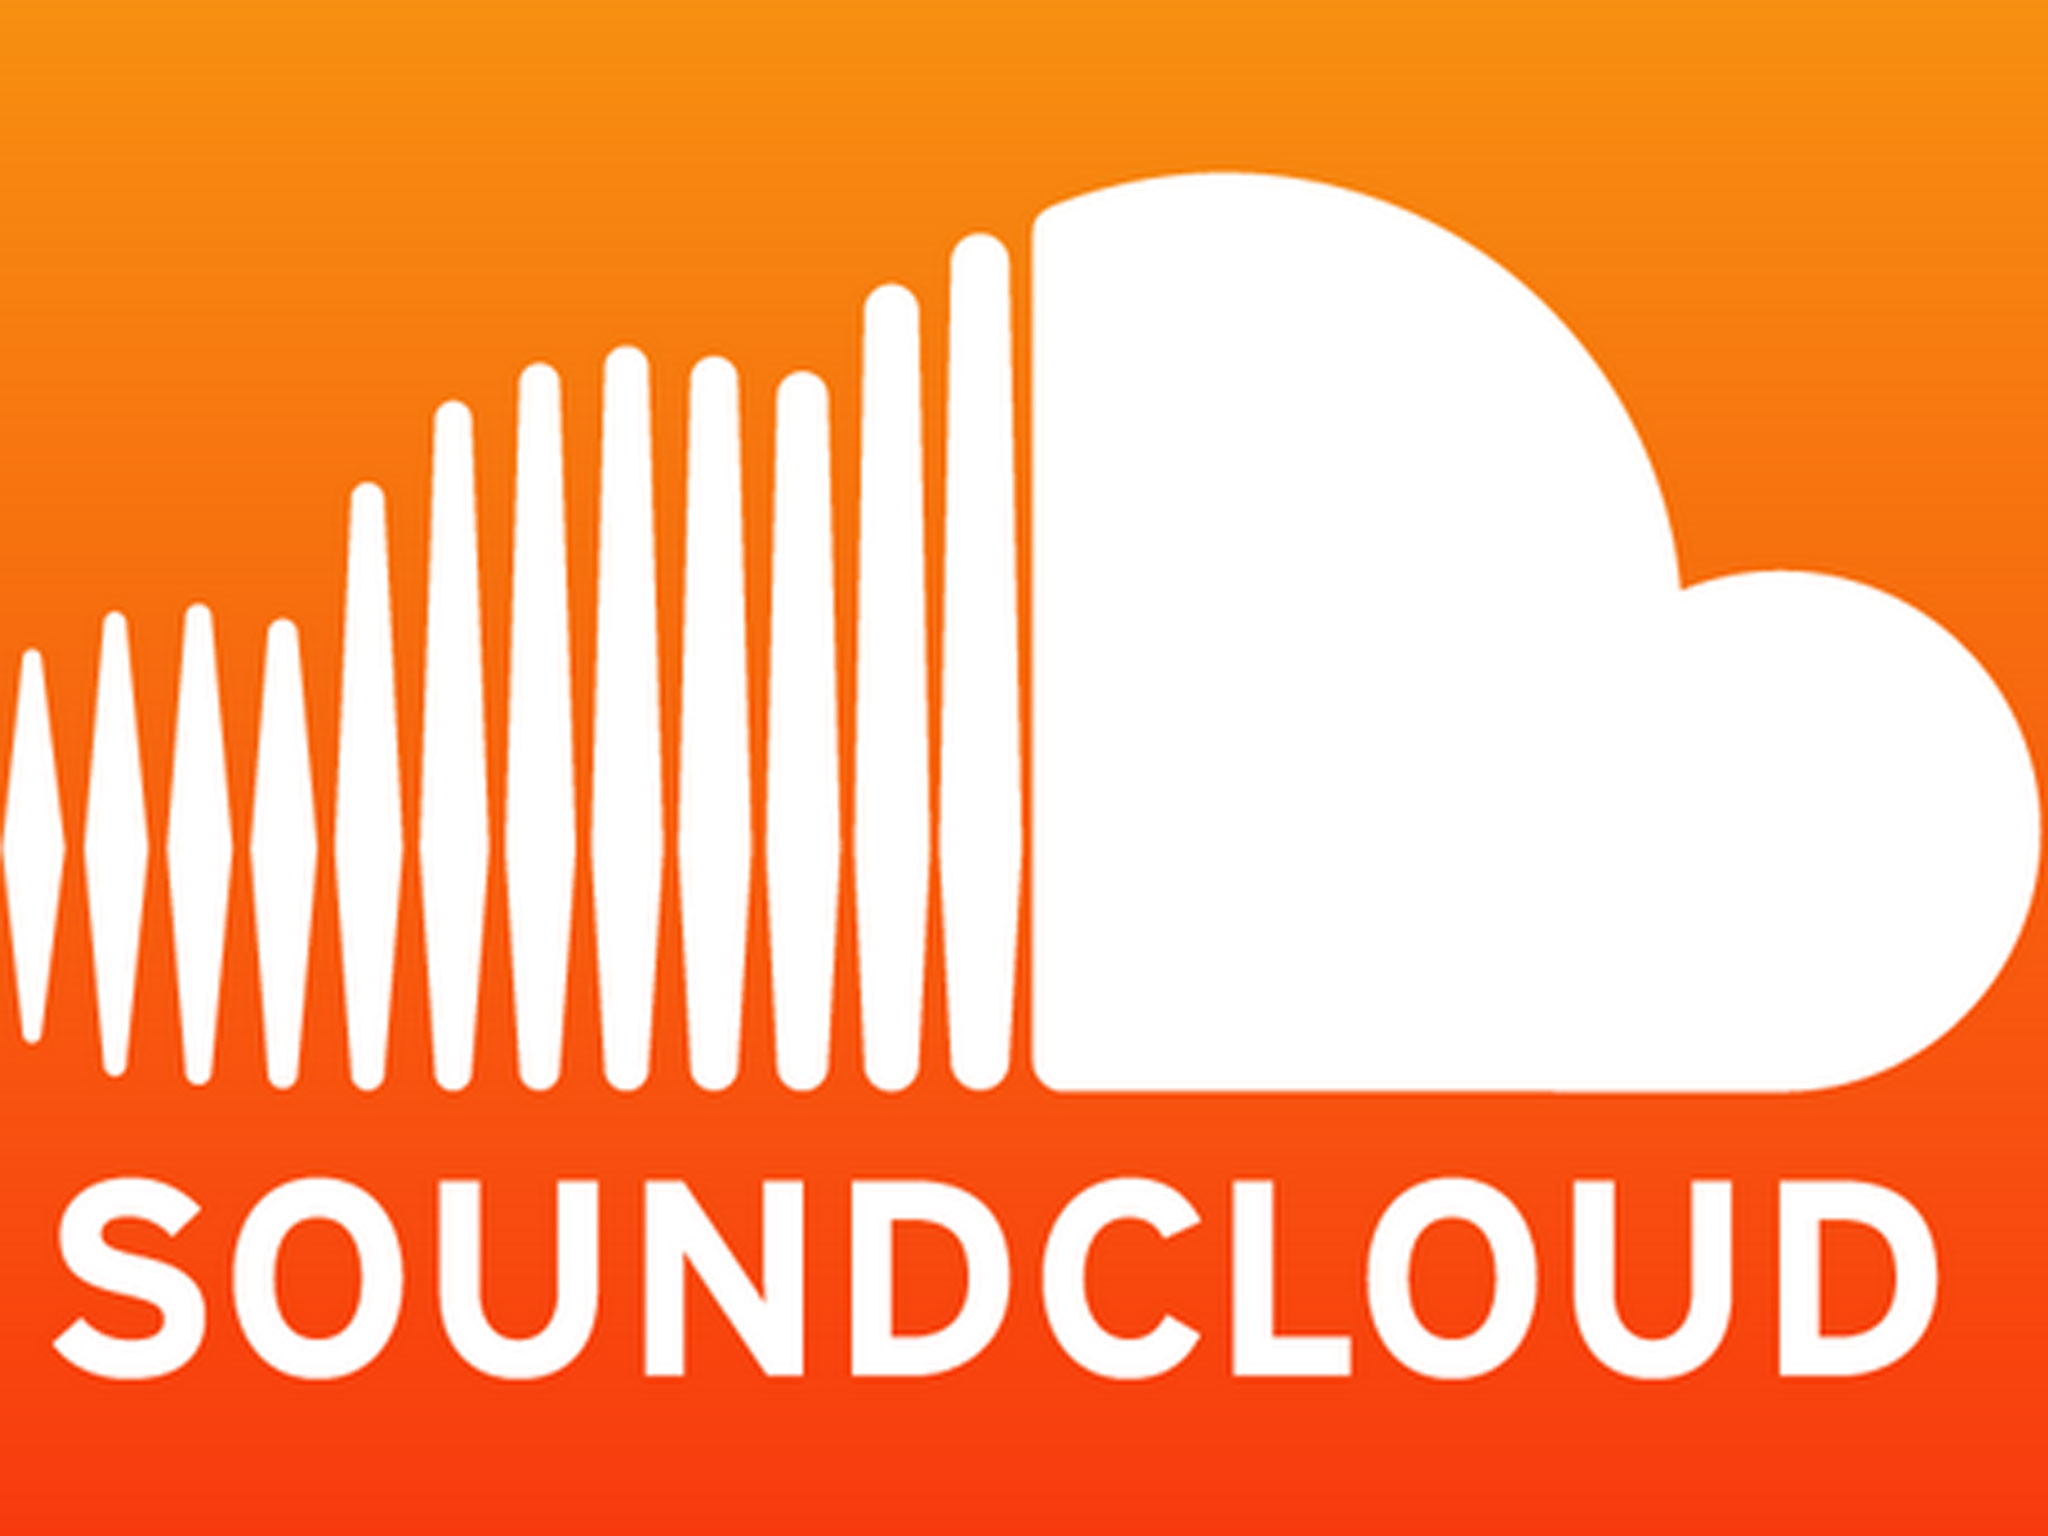 Ouça nossas dicas -  Podcasts - SoundCloud  - Salles Imóveis